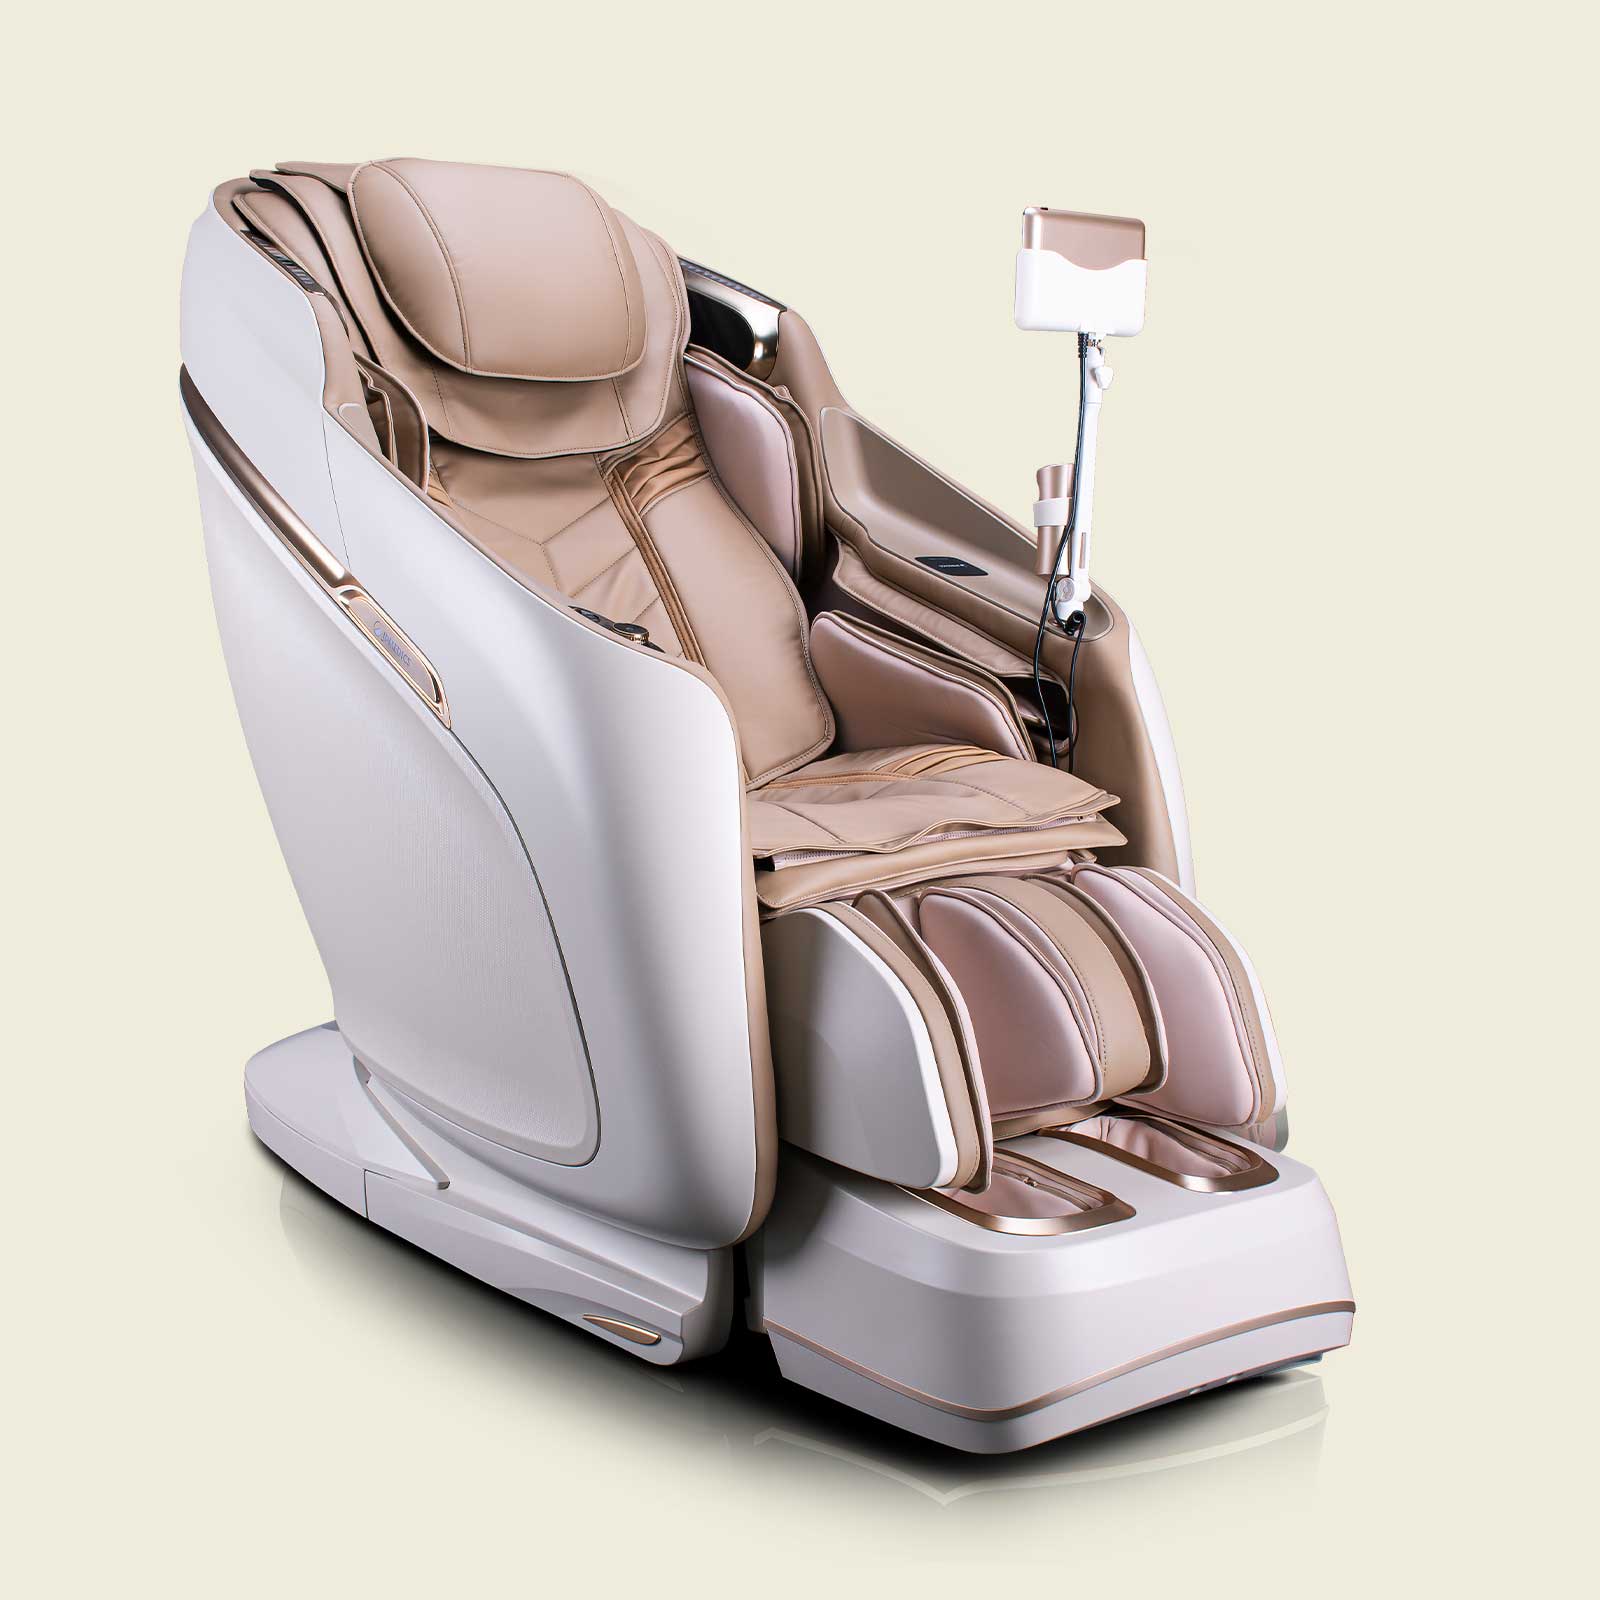 Massage seats